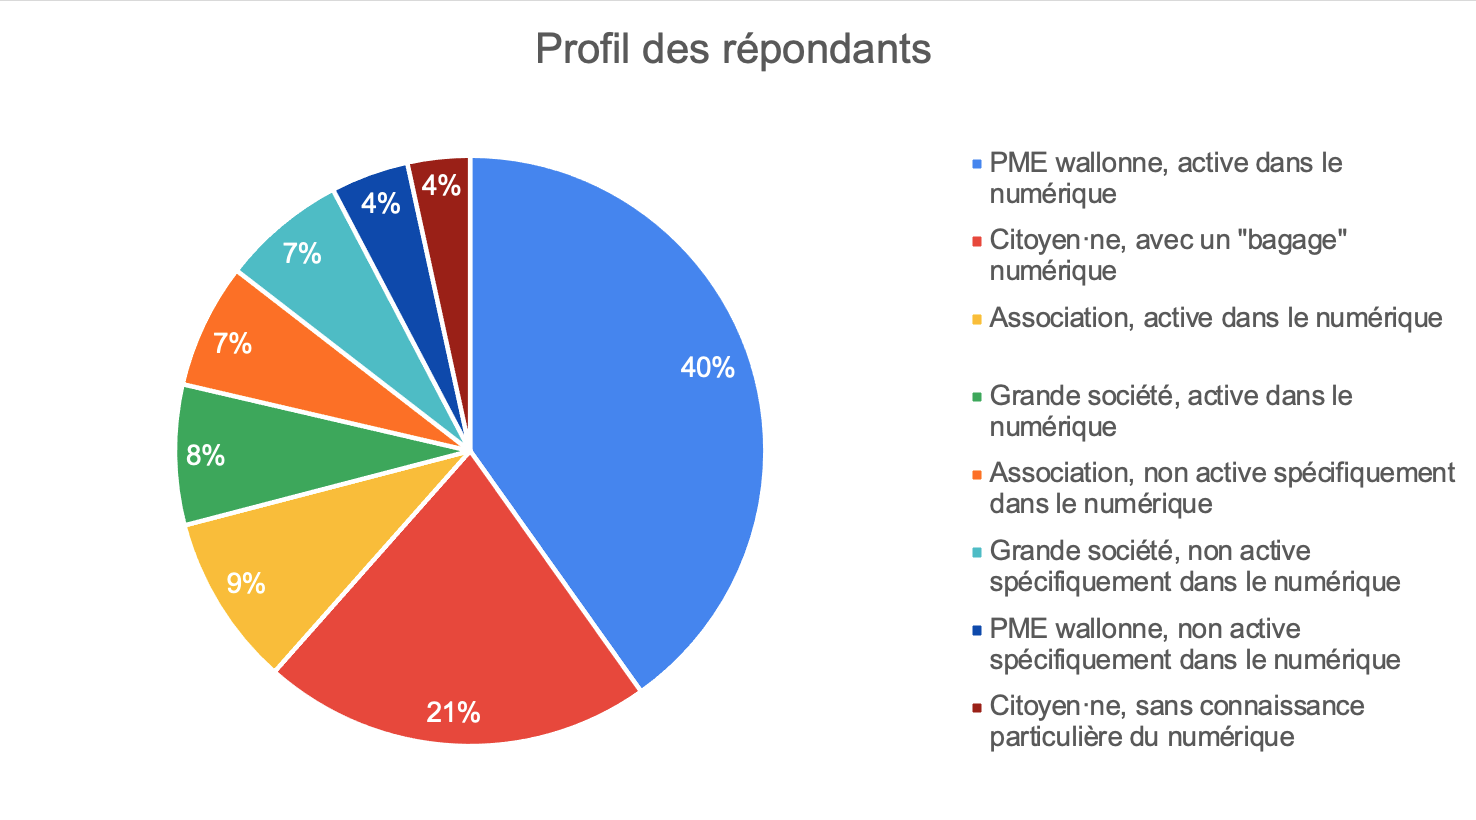 Profils des répondants à l'enquête en ligne (étude AdN pour Digital Wallonia)